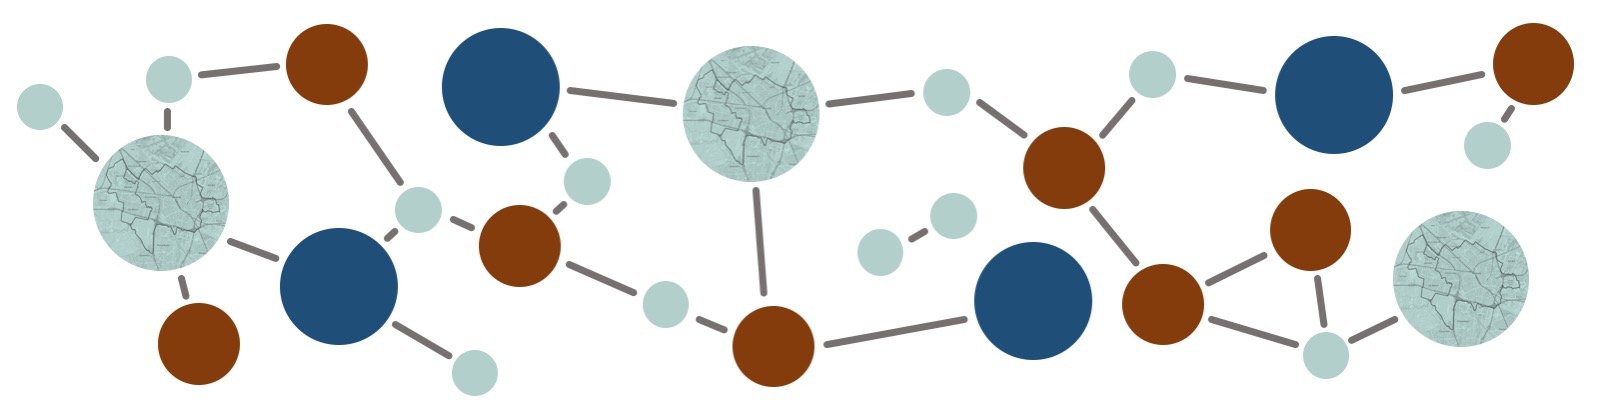 Abstracte voorstelling van een netwerk van organisaties